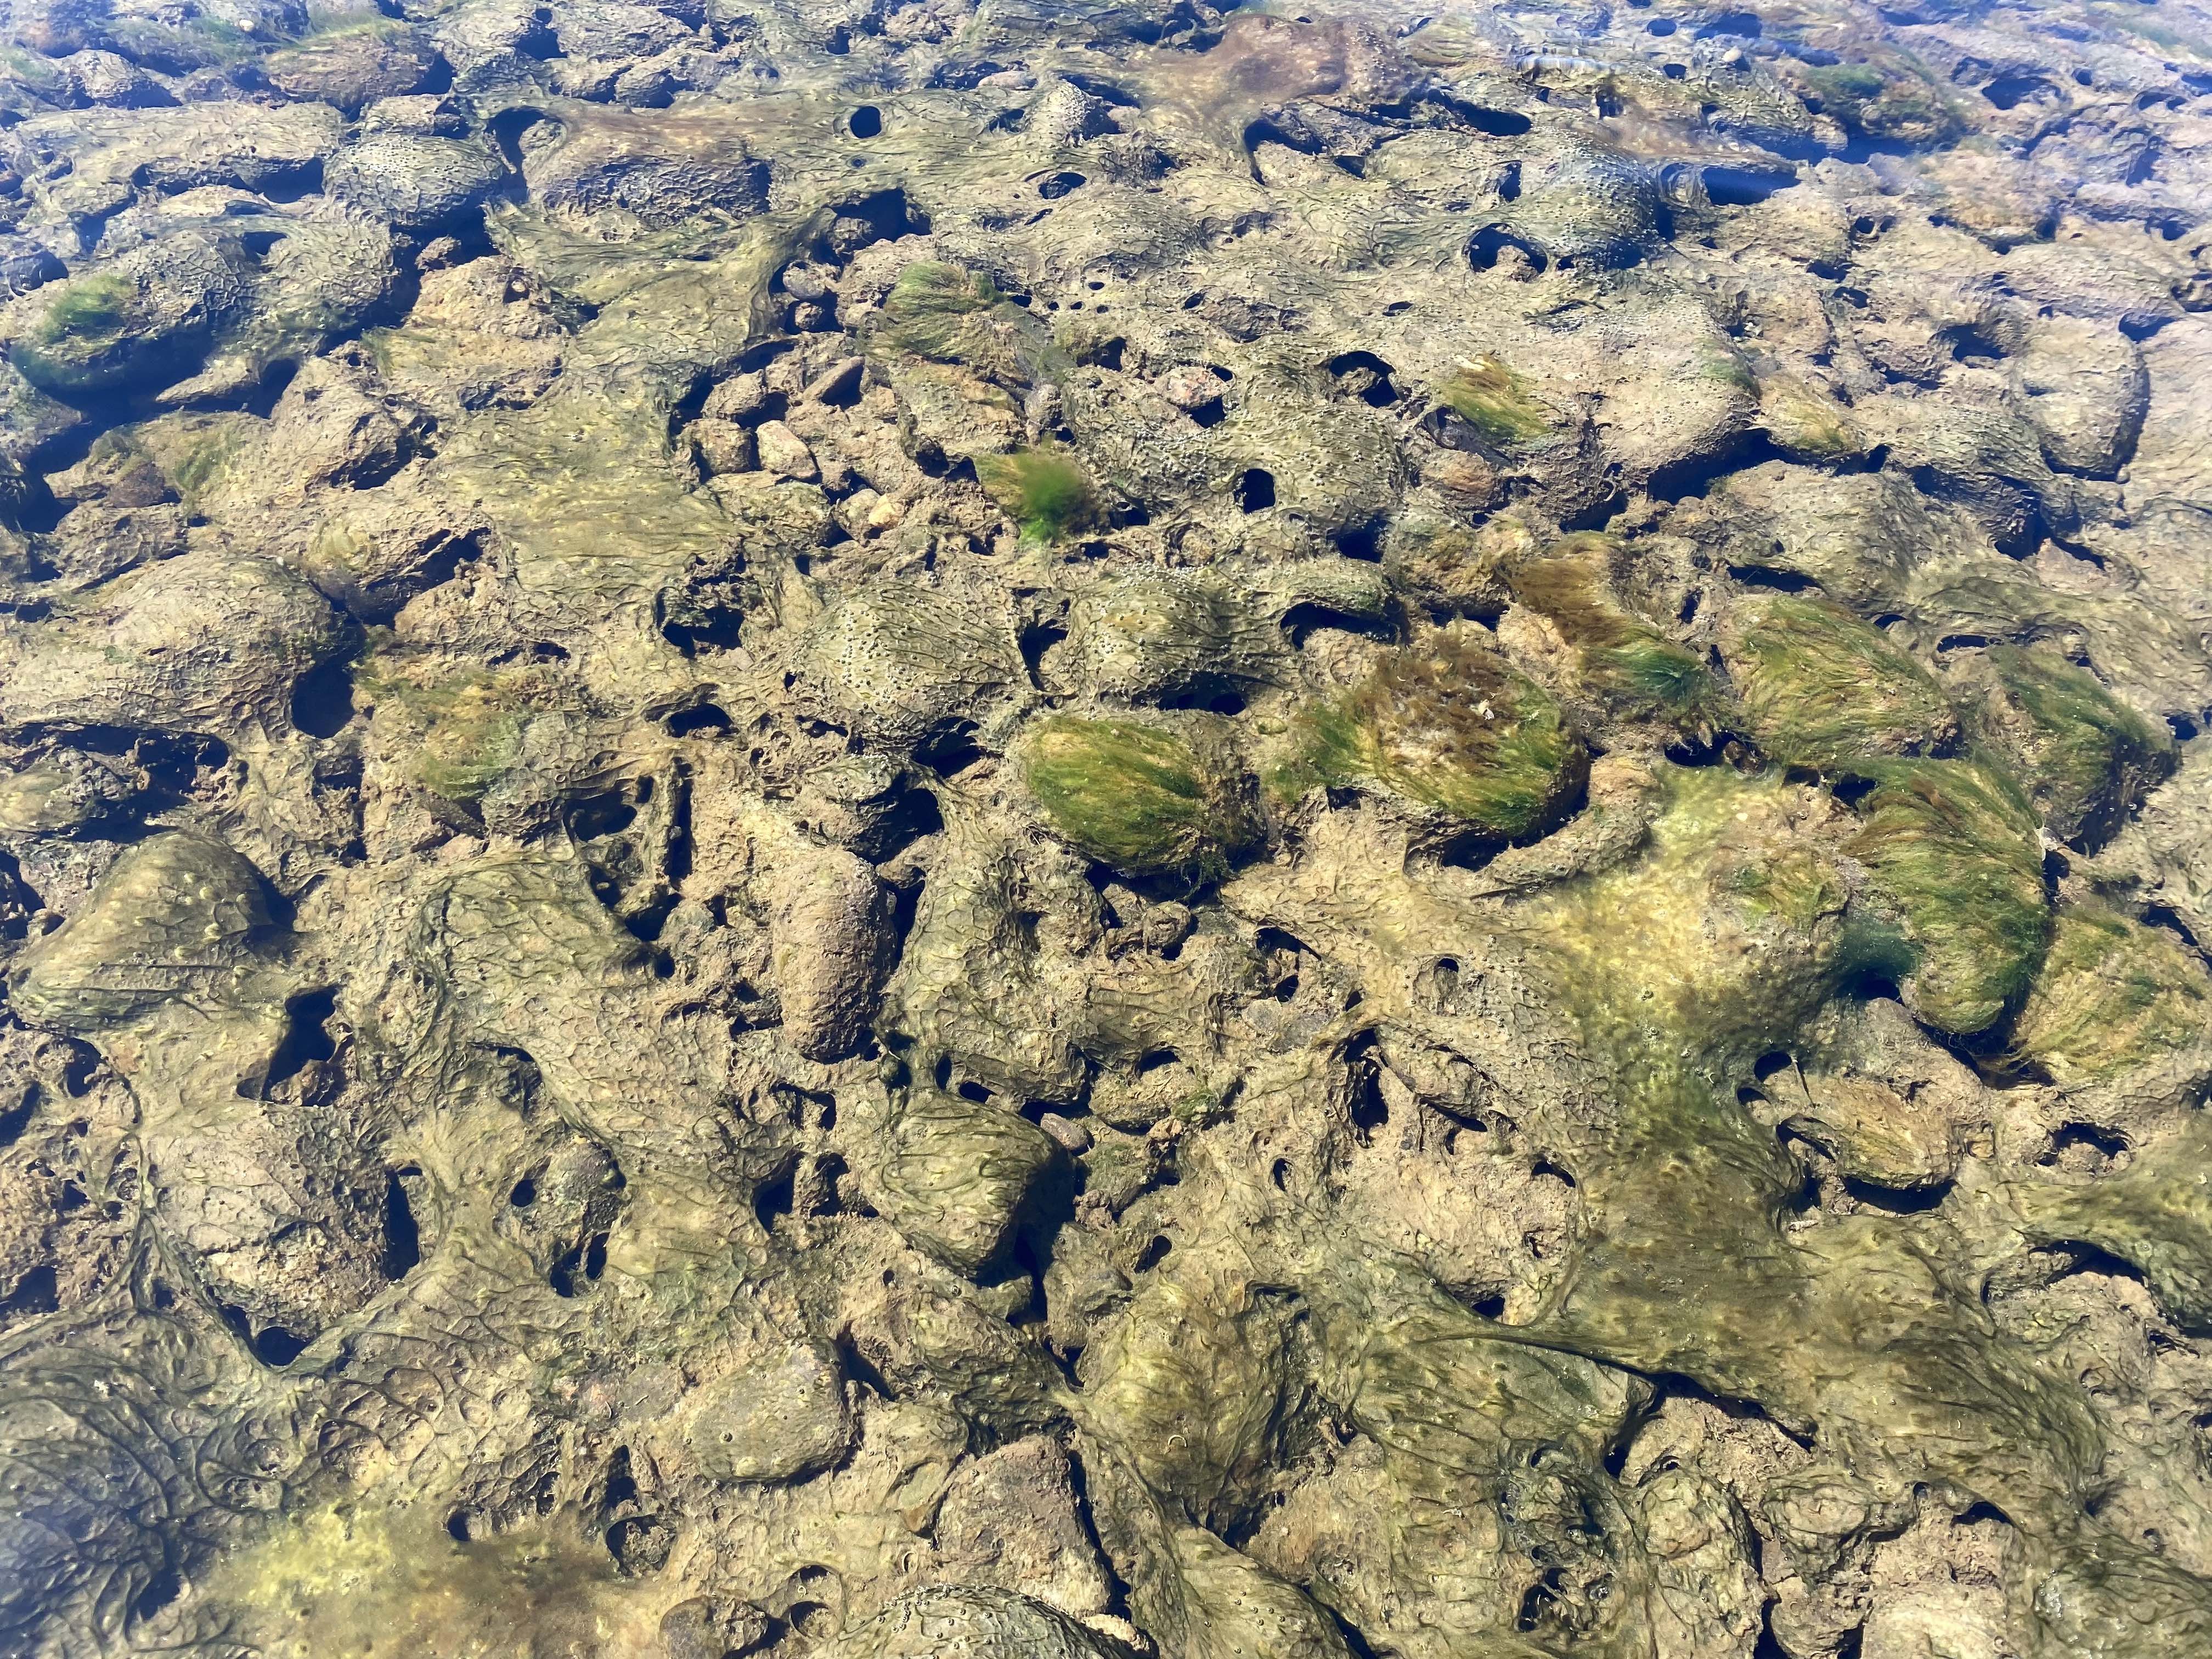 algae on rocks